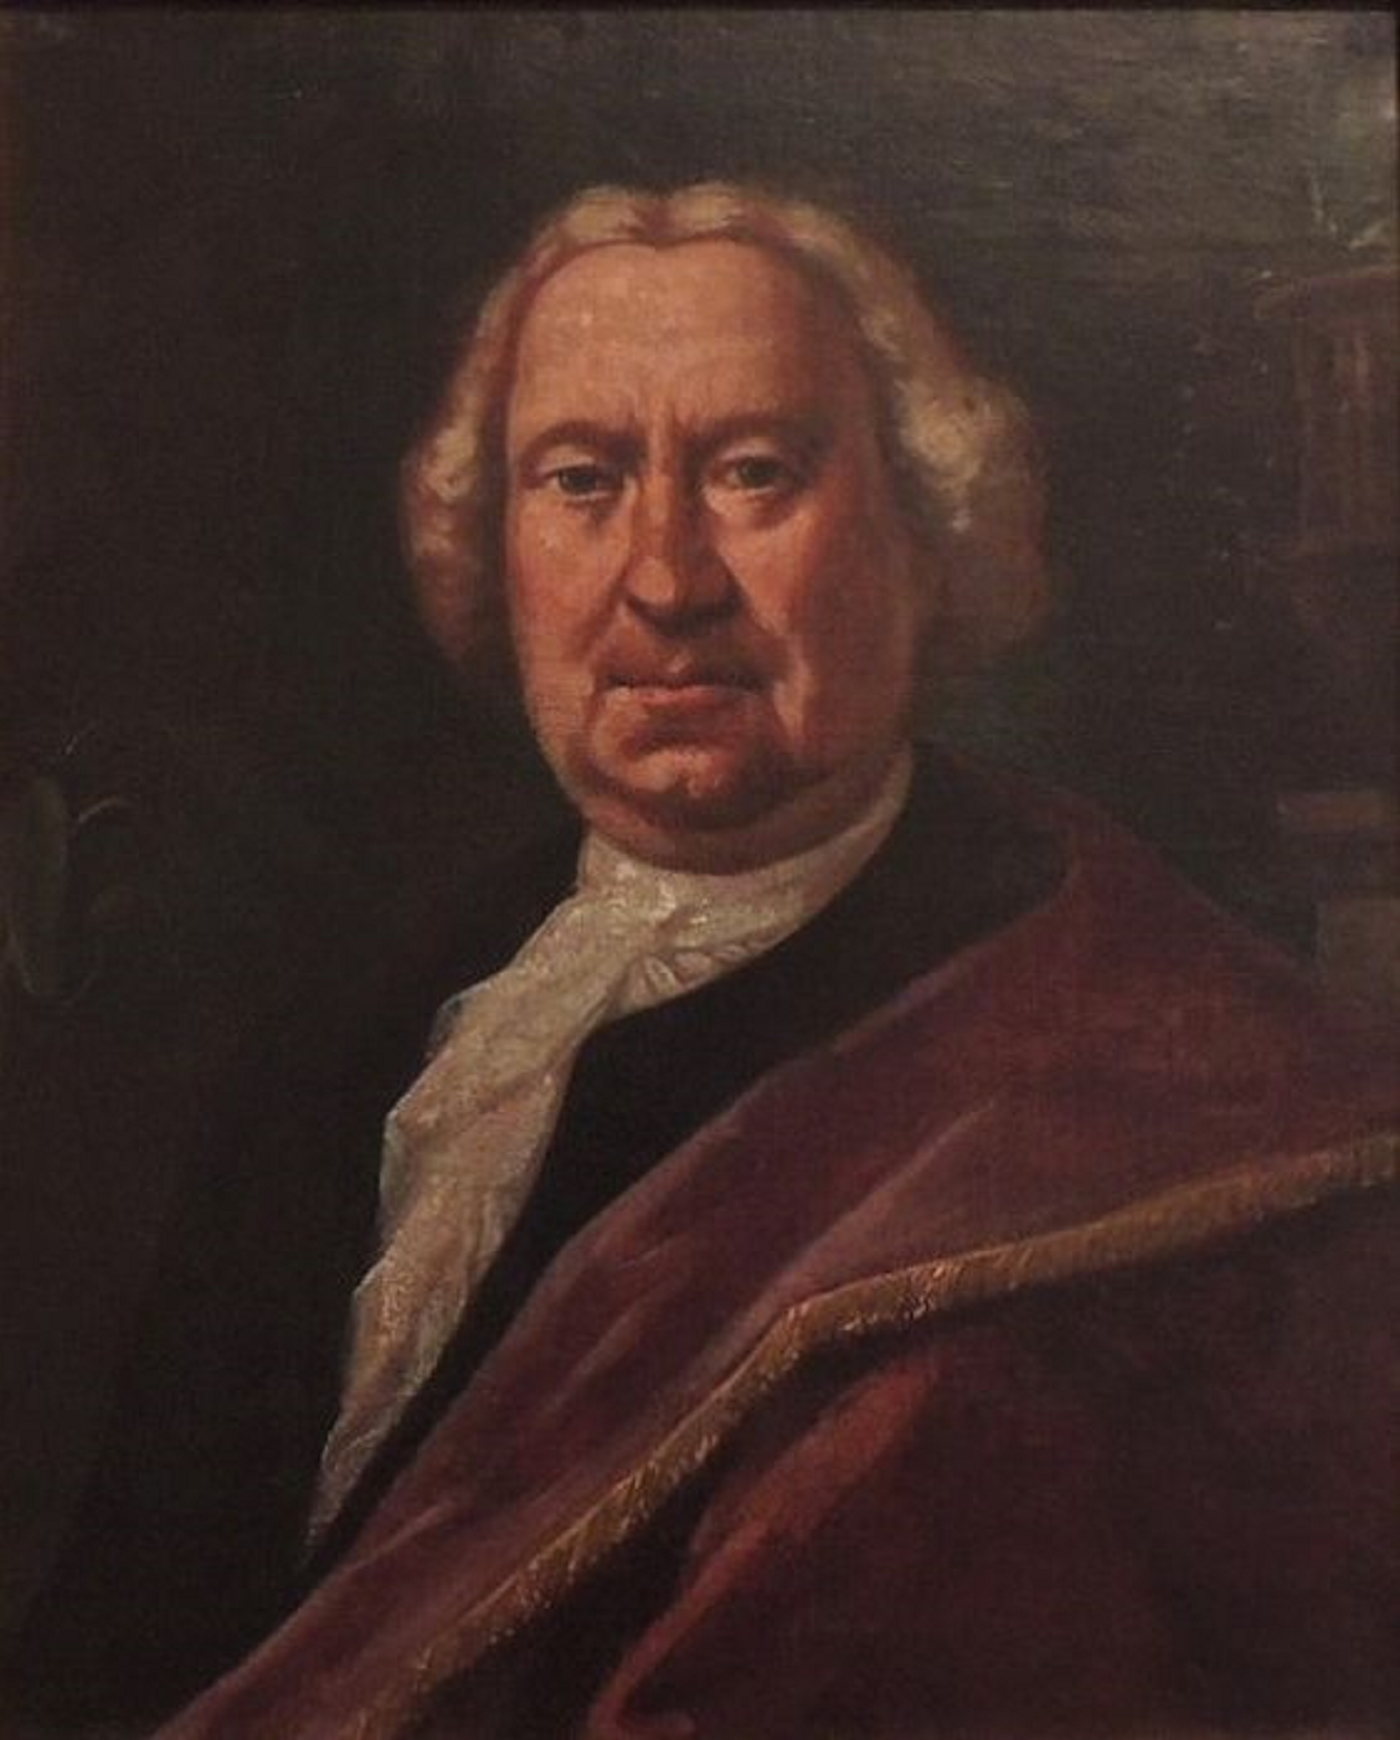 Nace Antoni Viladomat, el mejor pintor catalán del XVIII